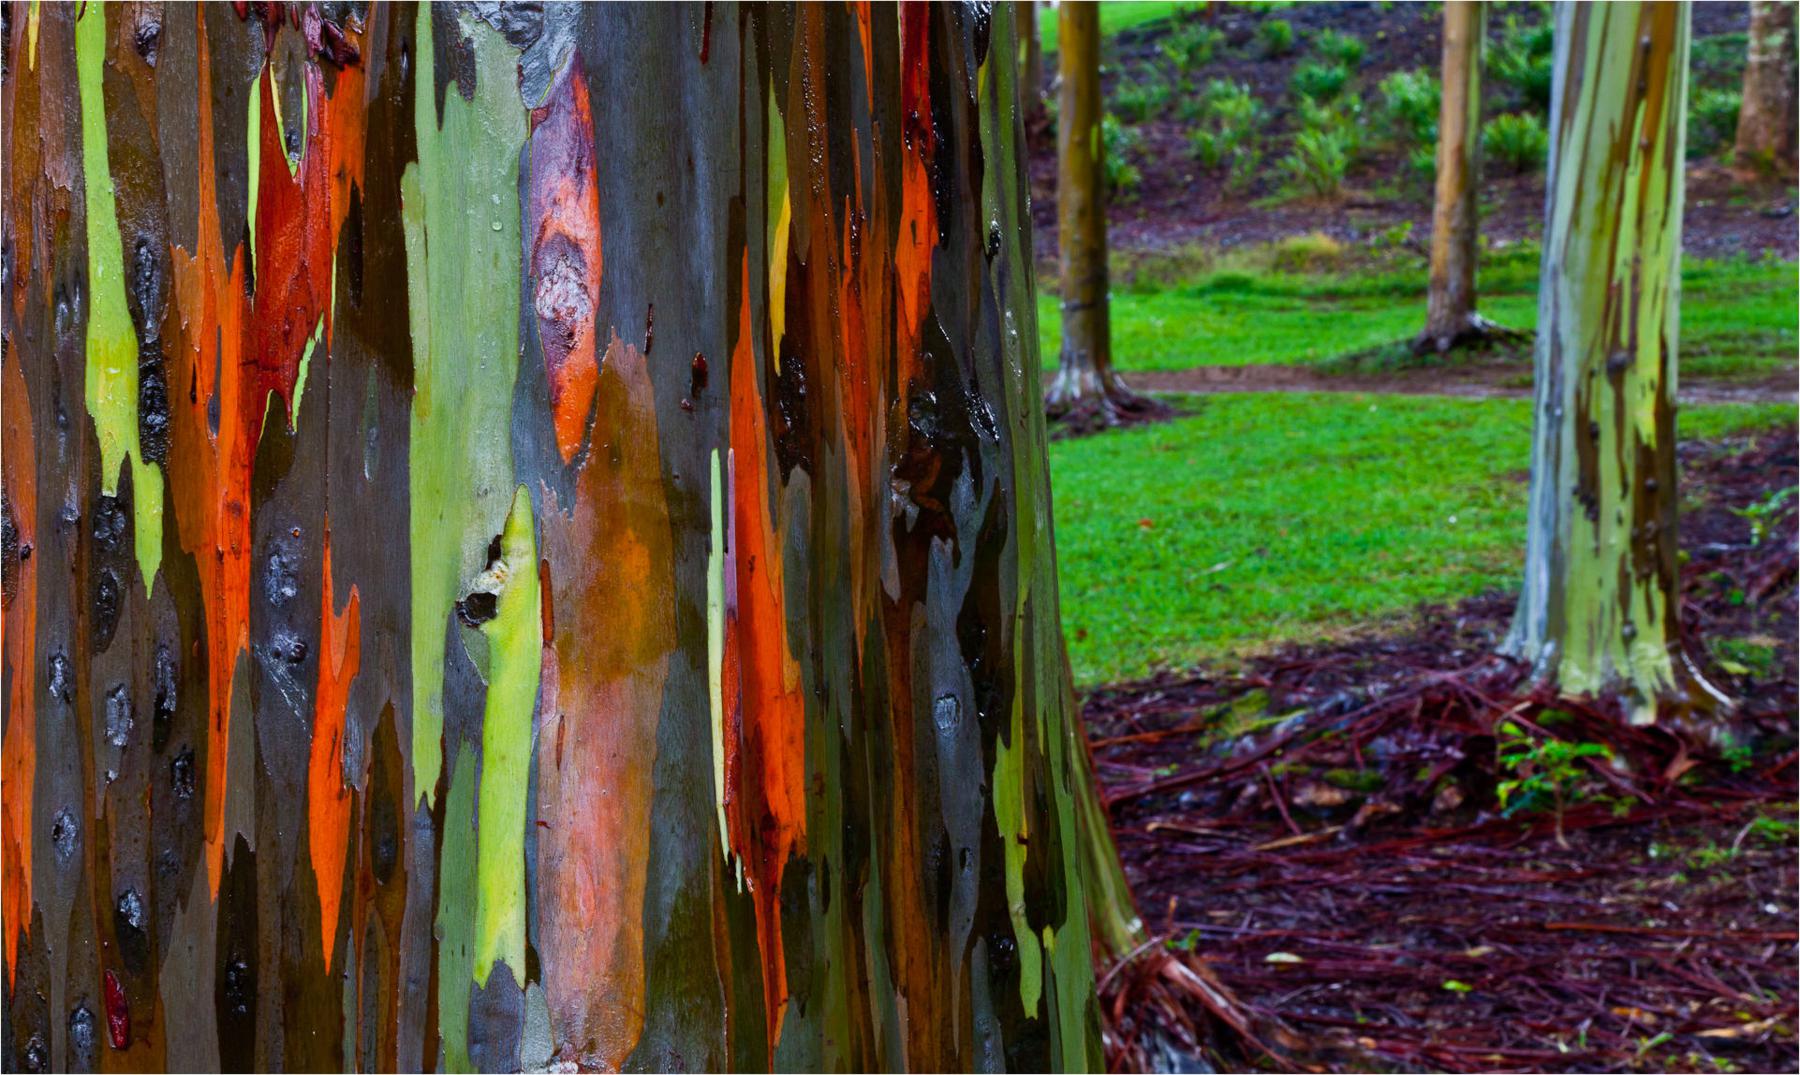 El eucalipto arcoiris, el árbol más increíble del mundo